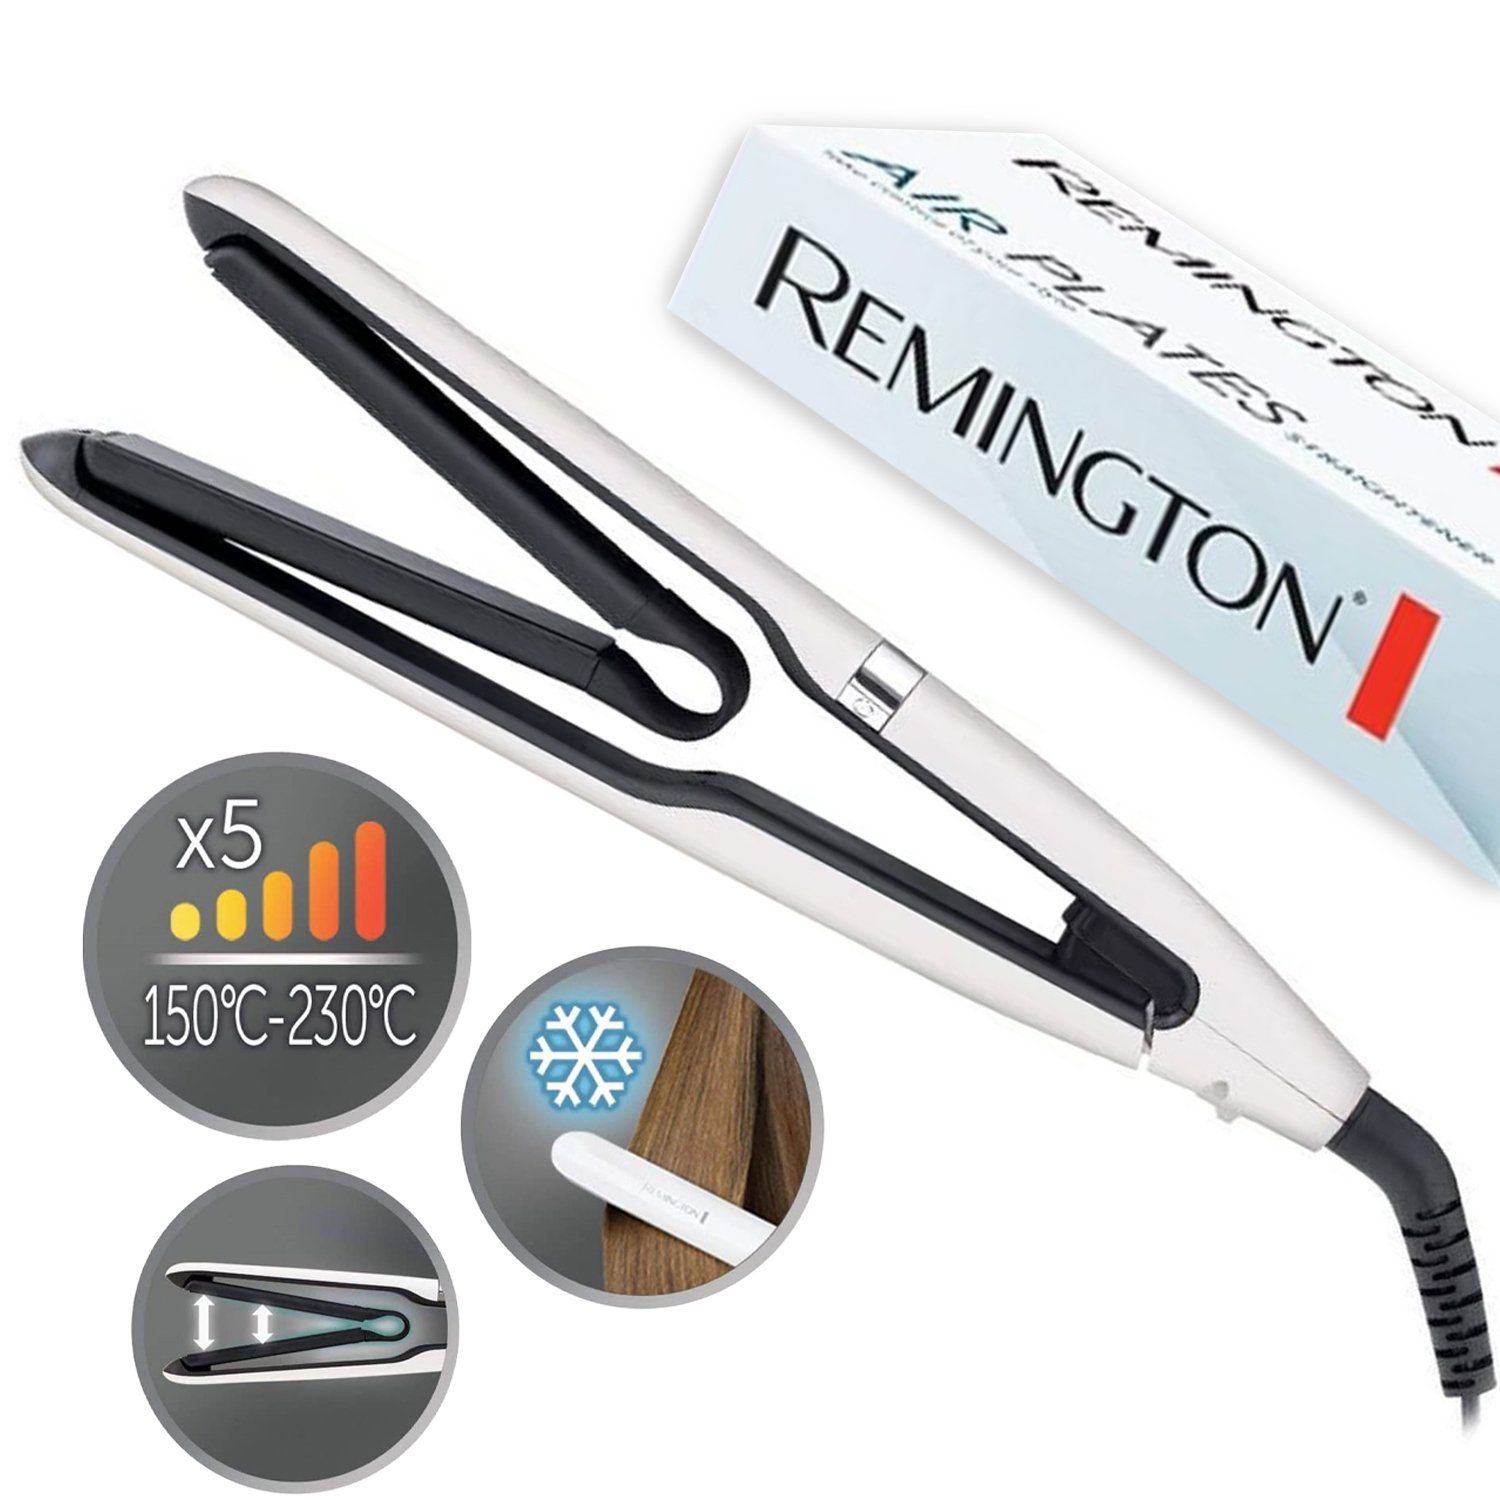 Remington Glätteisen Haarglätter Glätteisen S7412 Air Plates, Straightner,  Titanium-Keramikbeschichtung, Digitales Display, 5  Temperatur-Einstellungen, Tastensperre, Transportverriegelung,  Cool-Touch-Gehäuse, etc.